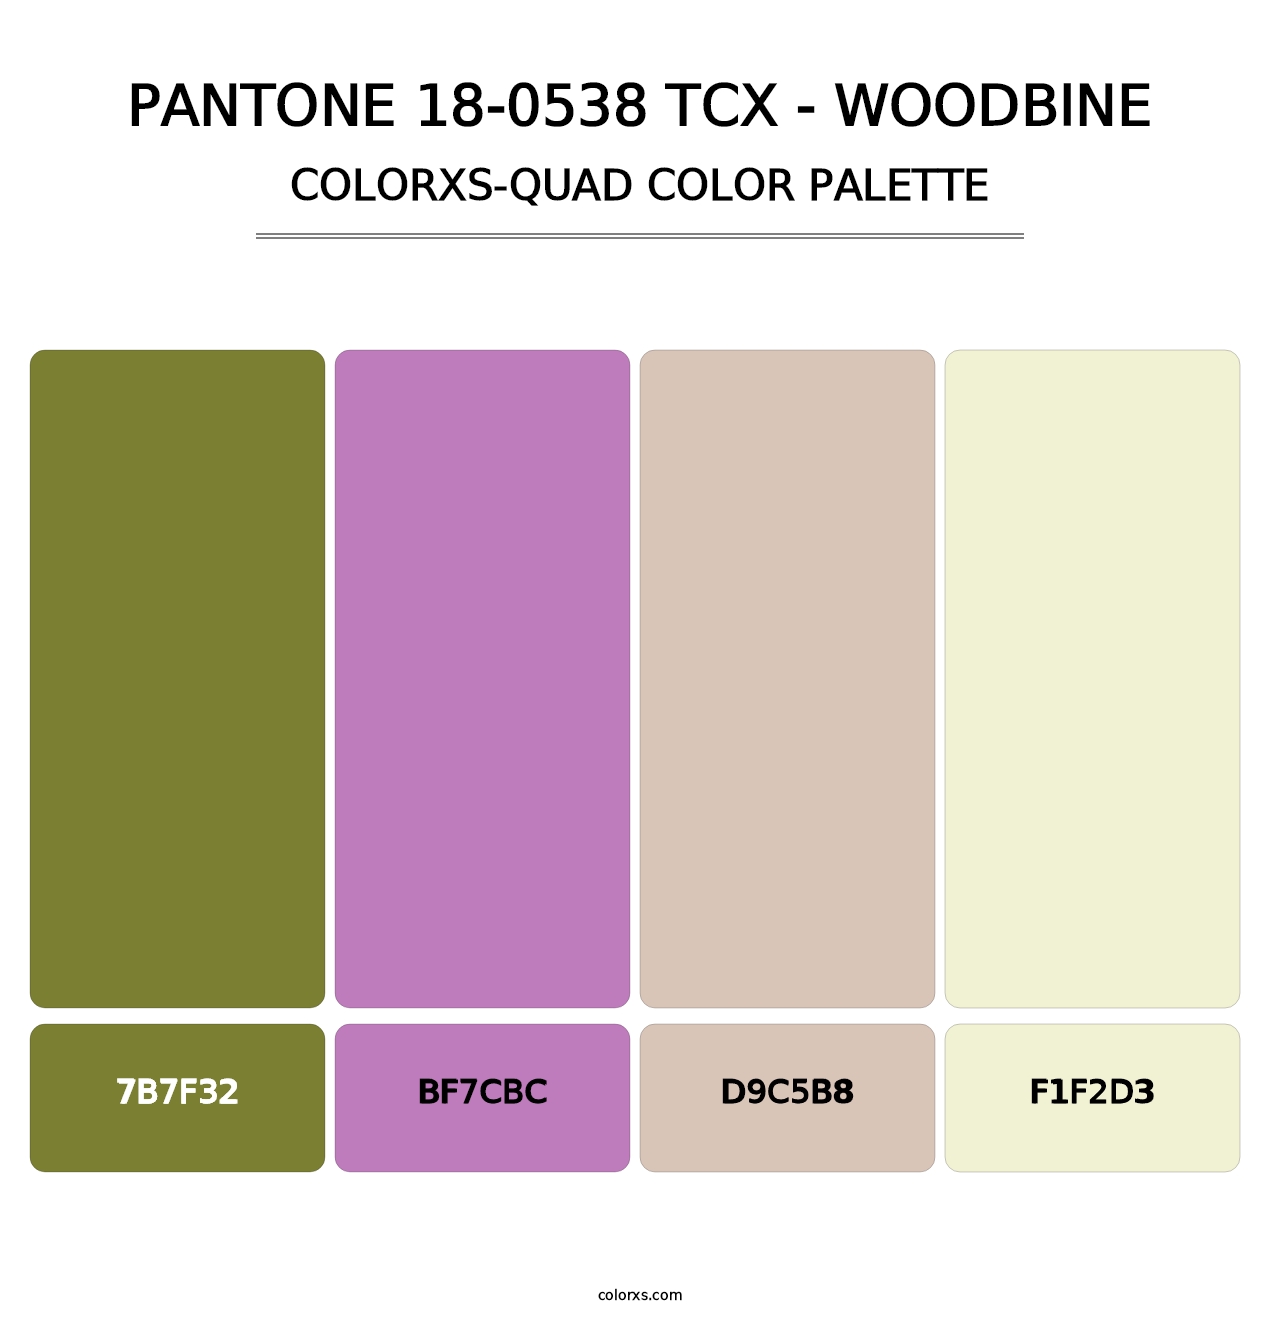 PANTONE 18-0538 TCX - Woodbine - Colorxs Quad Palette